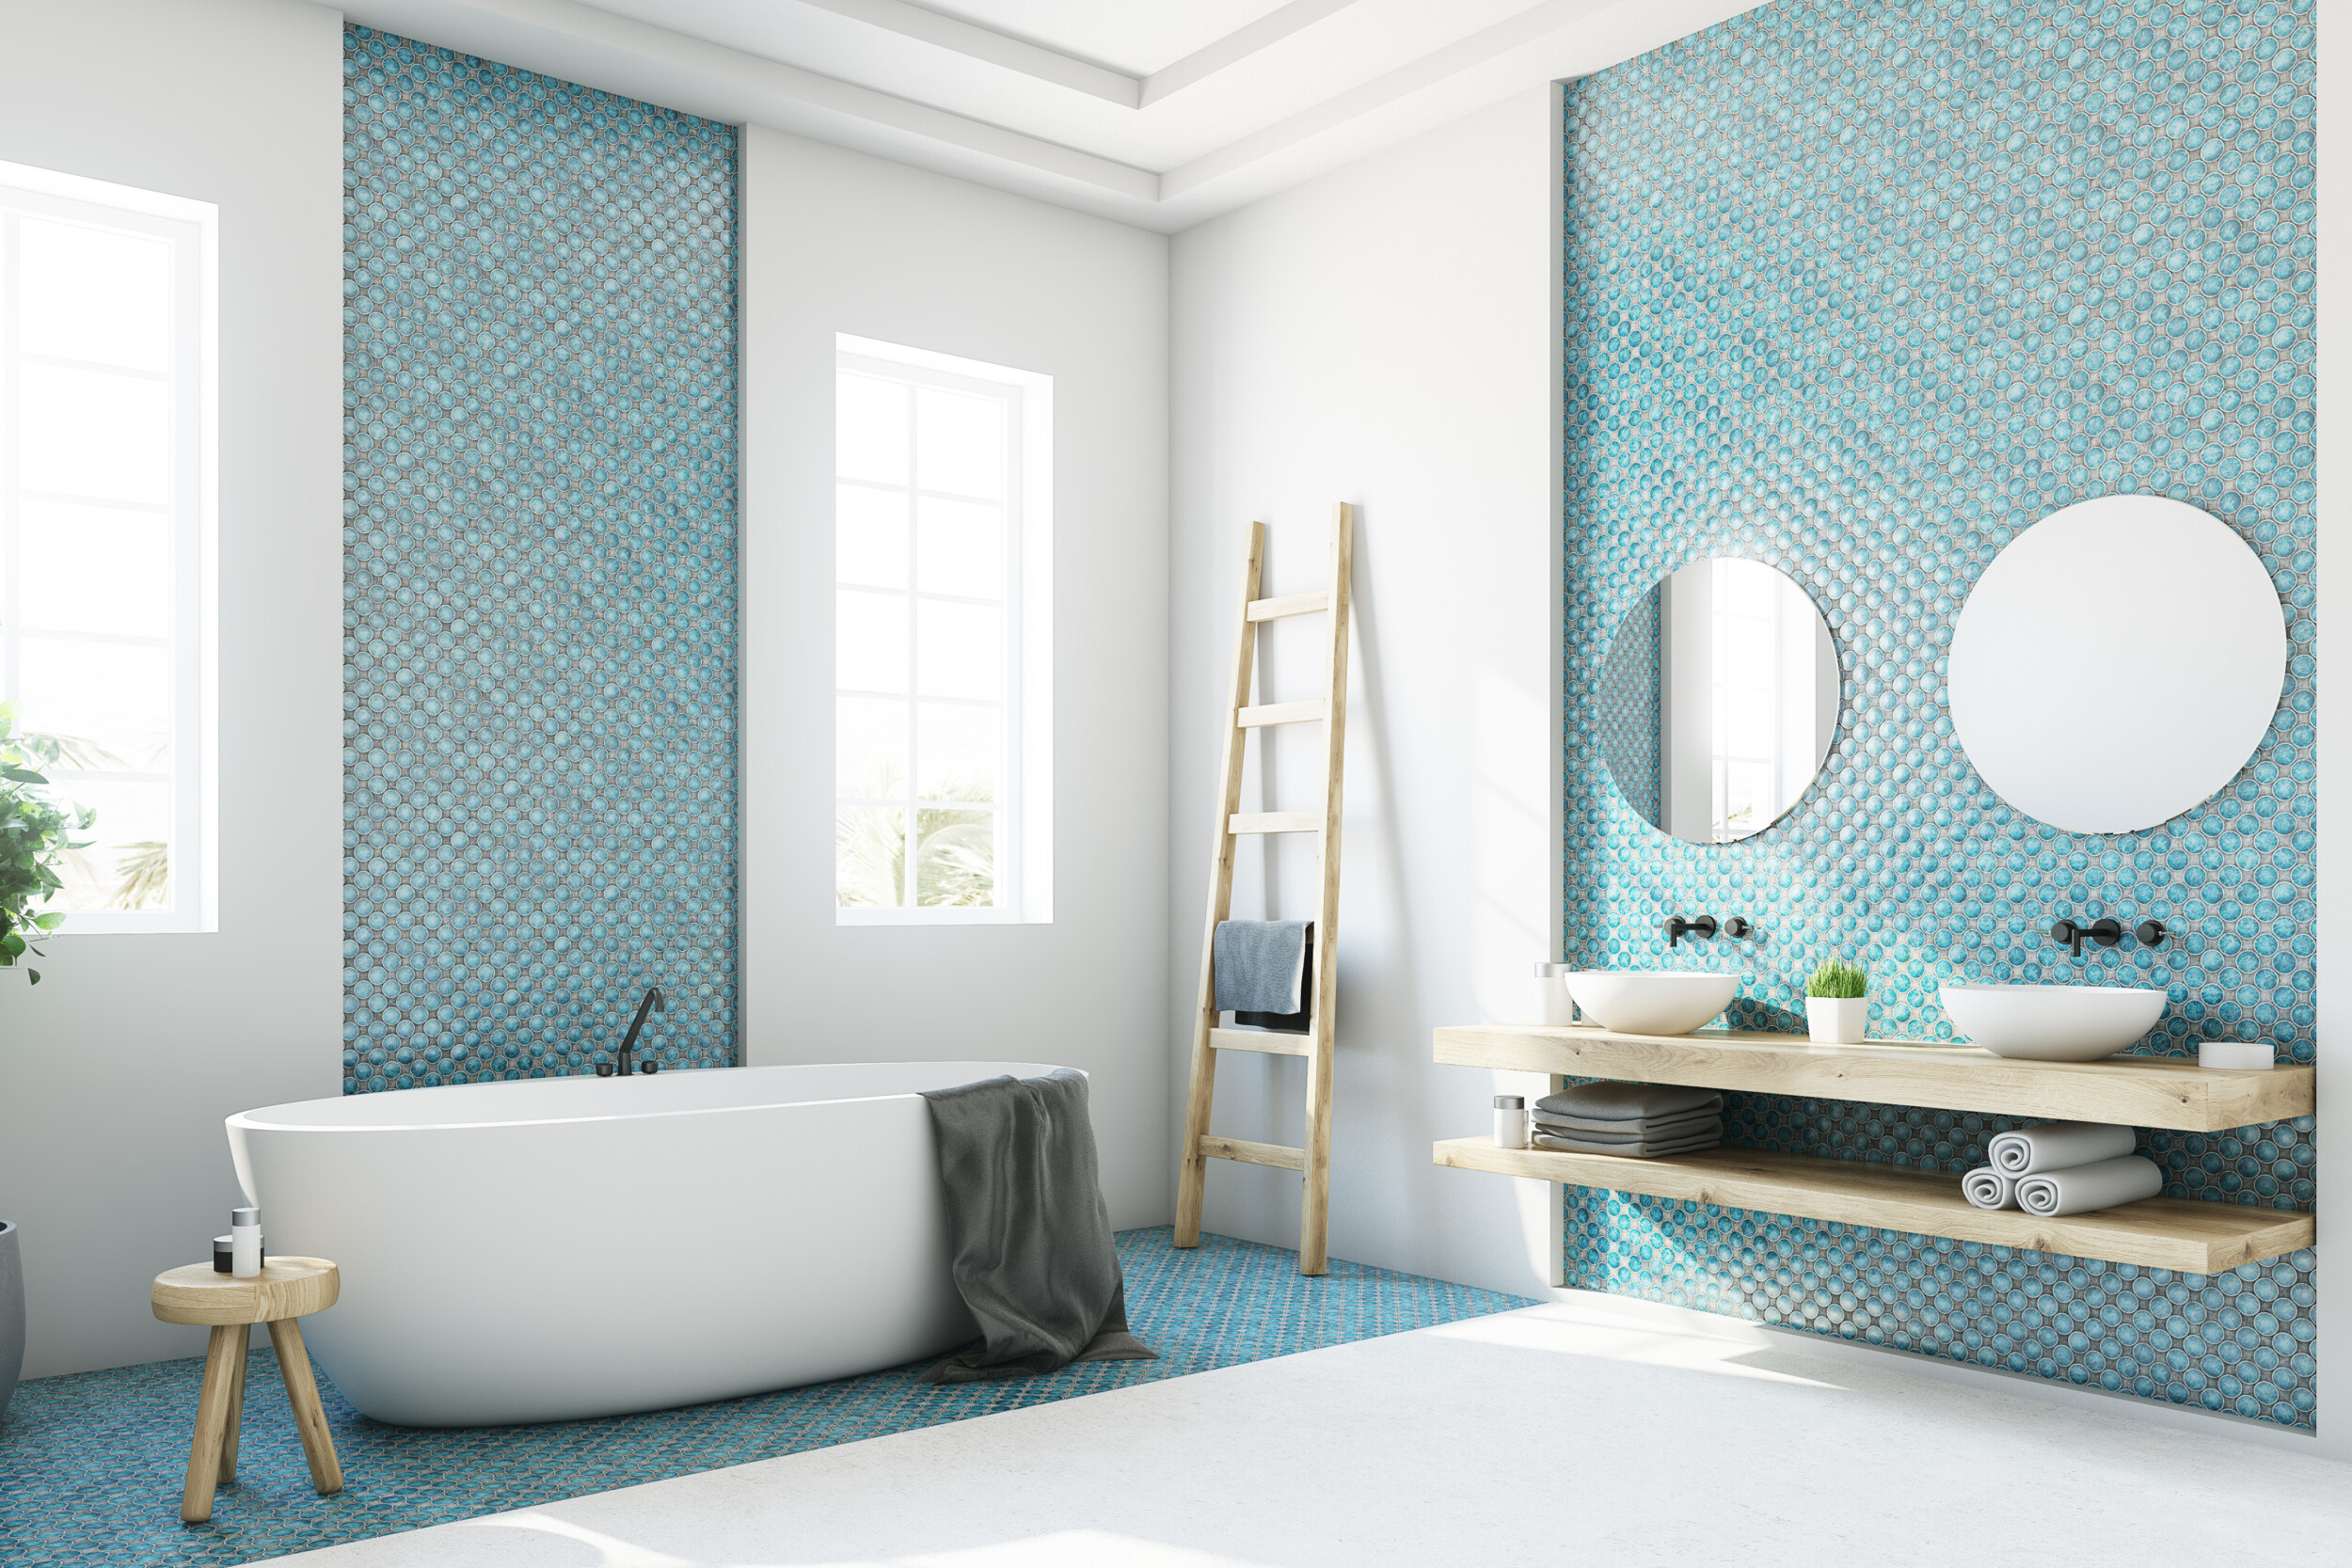 Bathroom Tile Ideas 17 Inspiring, Accent Tiles For Bathroom